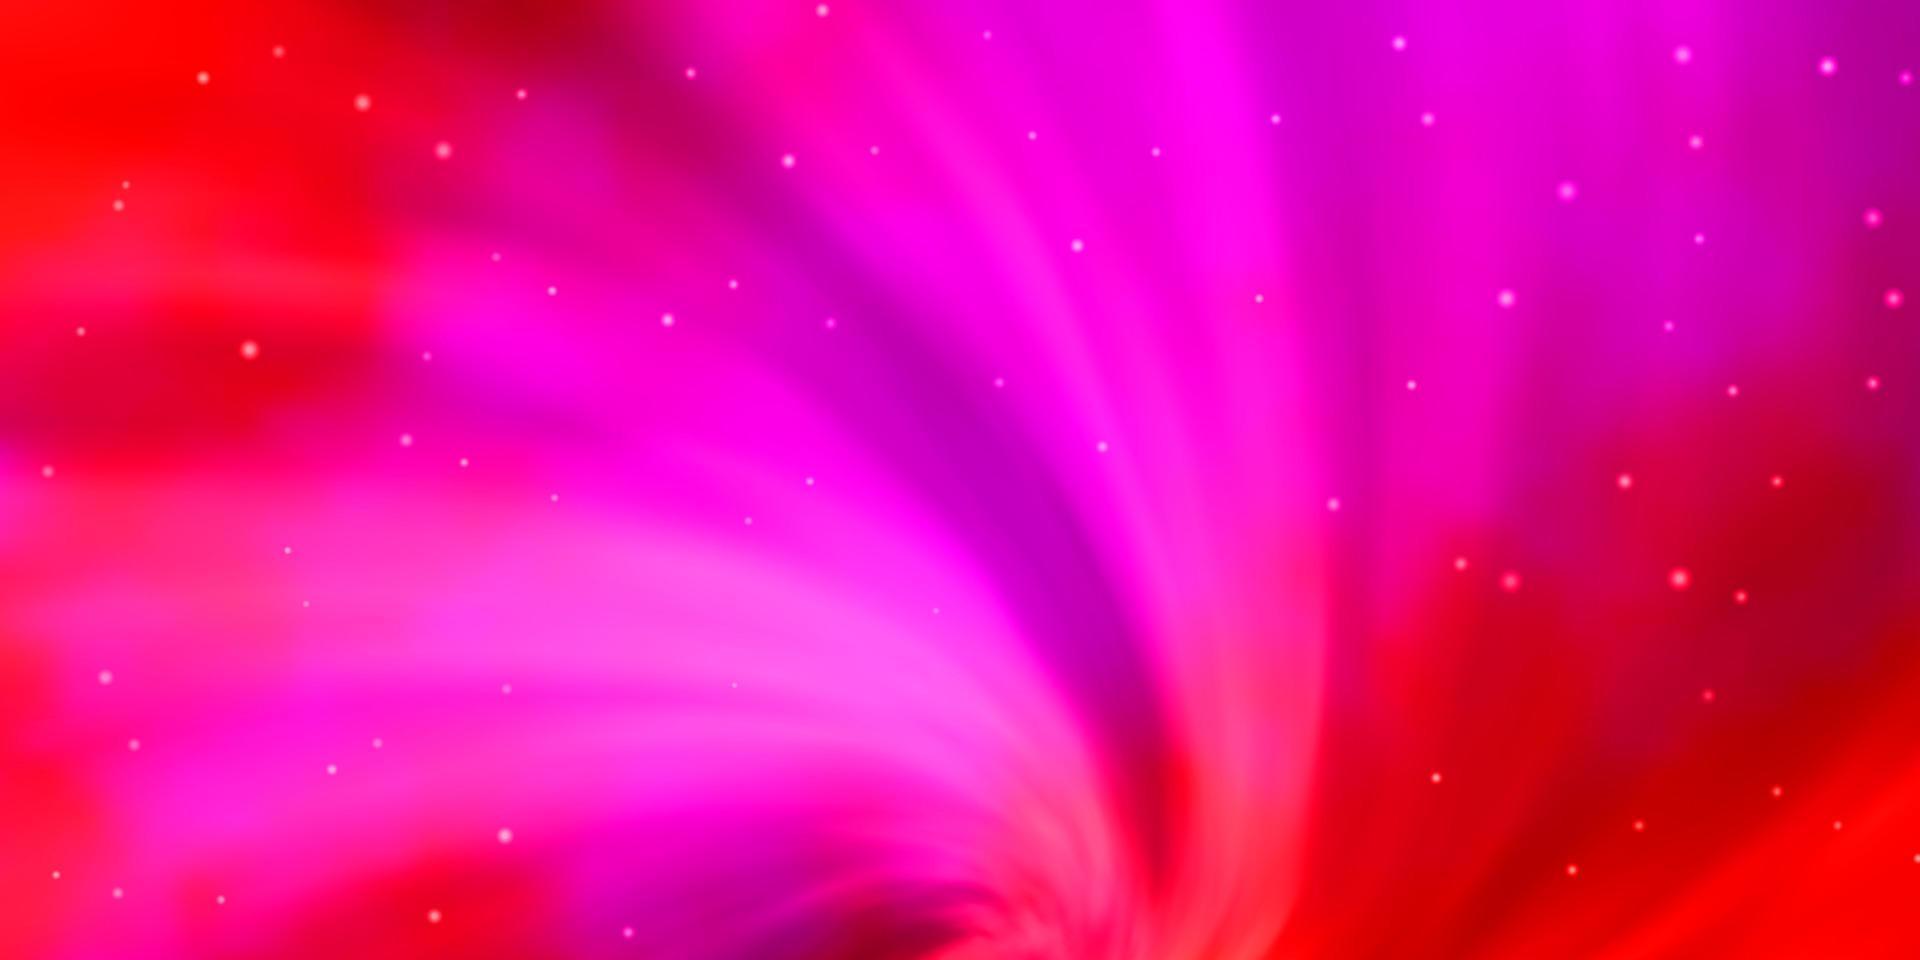 modelo de vetor rosa claro, vermelho com estrelas de neon.